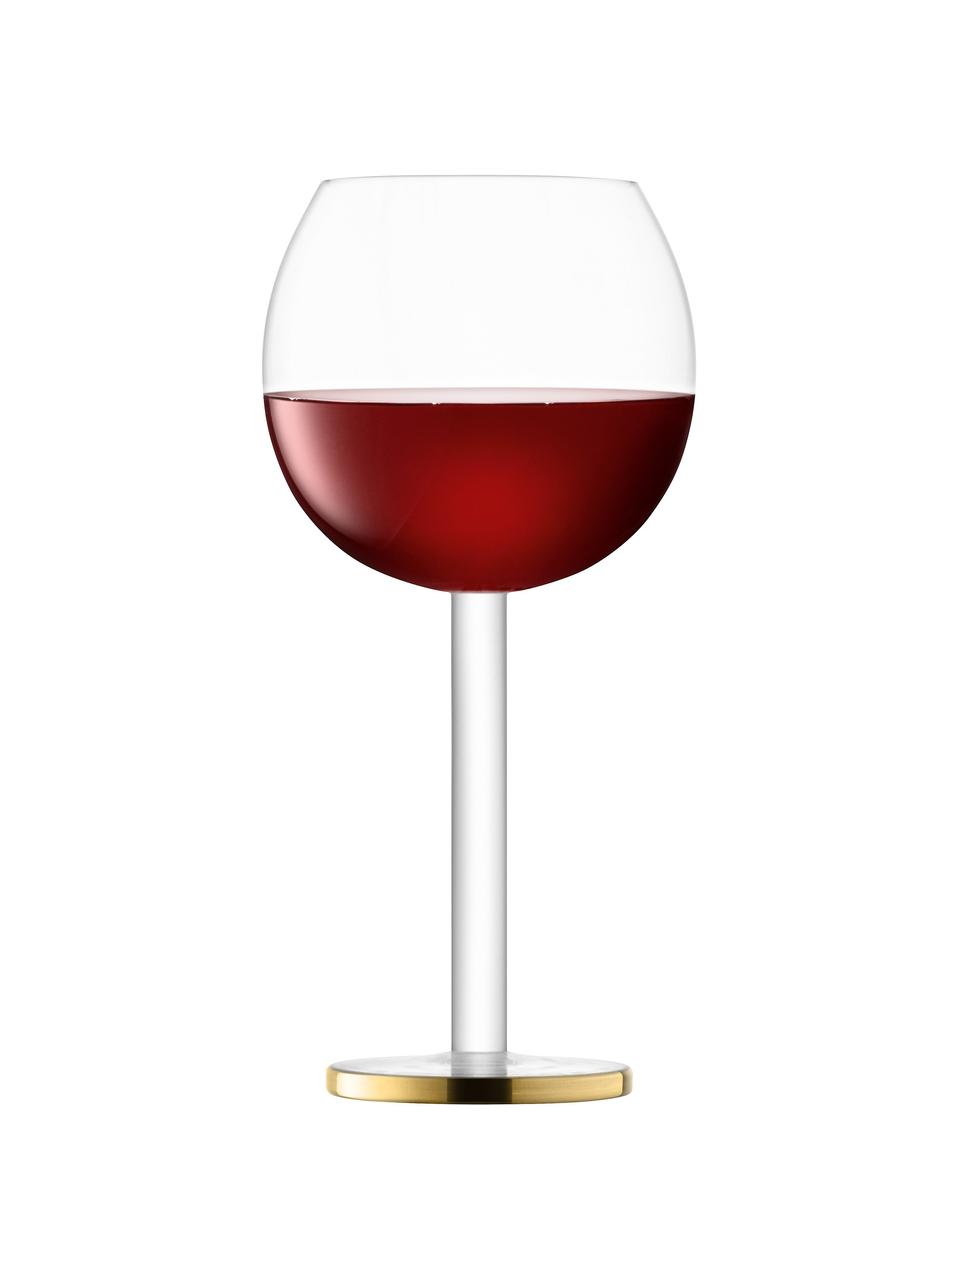 Mondgeblazen wijnglazen Luca, 2 stuks, Glas, Transparant met goudkleurige rand, Ø 9 x H 19 cm, 320 ml